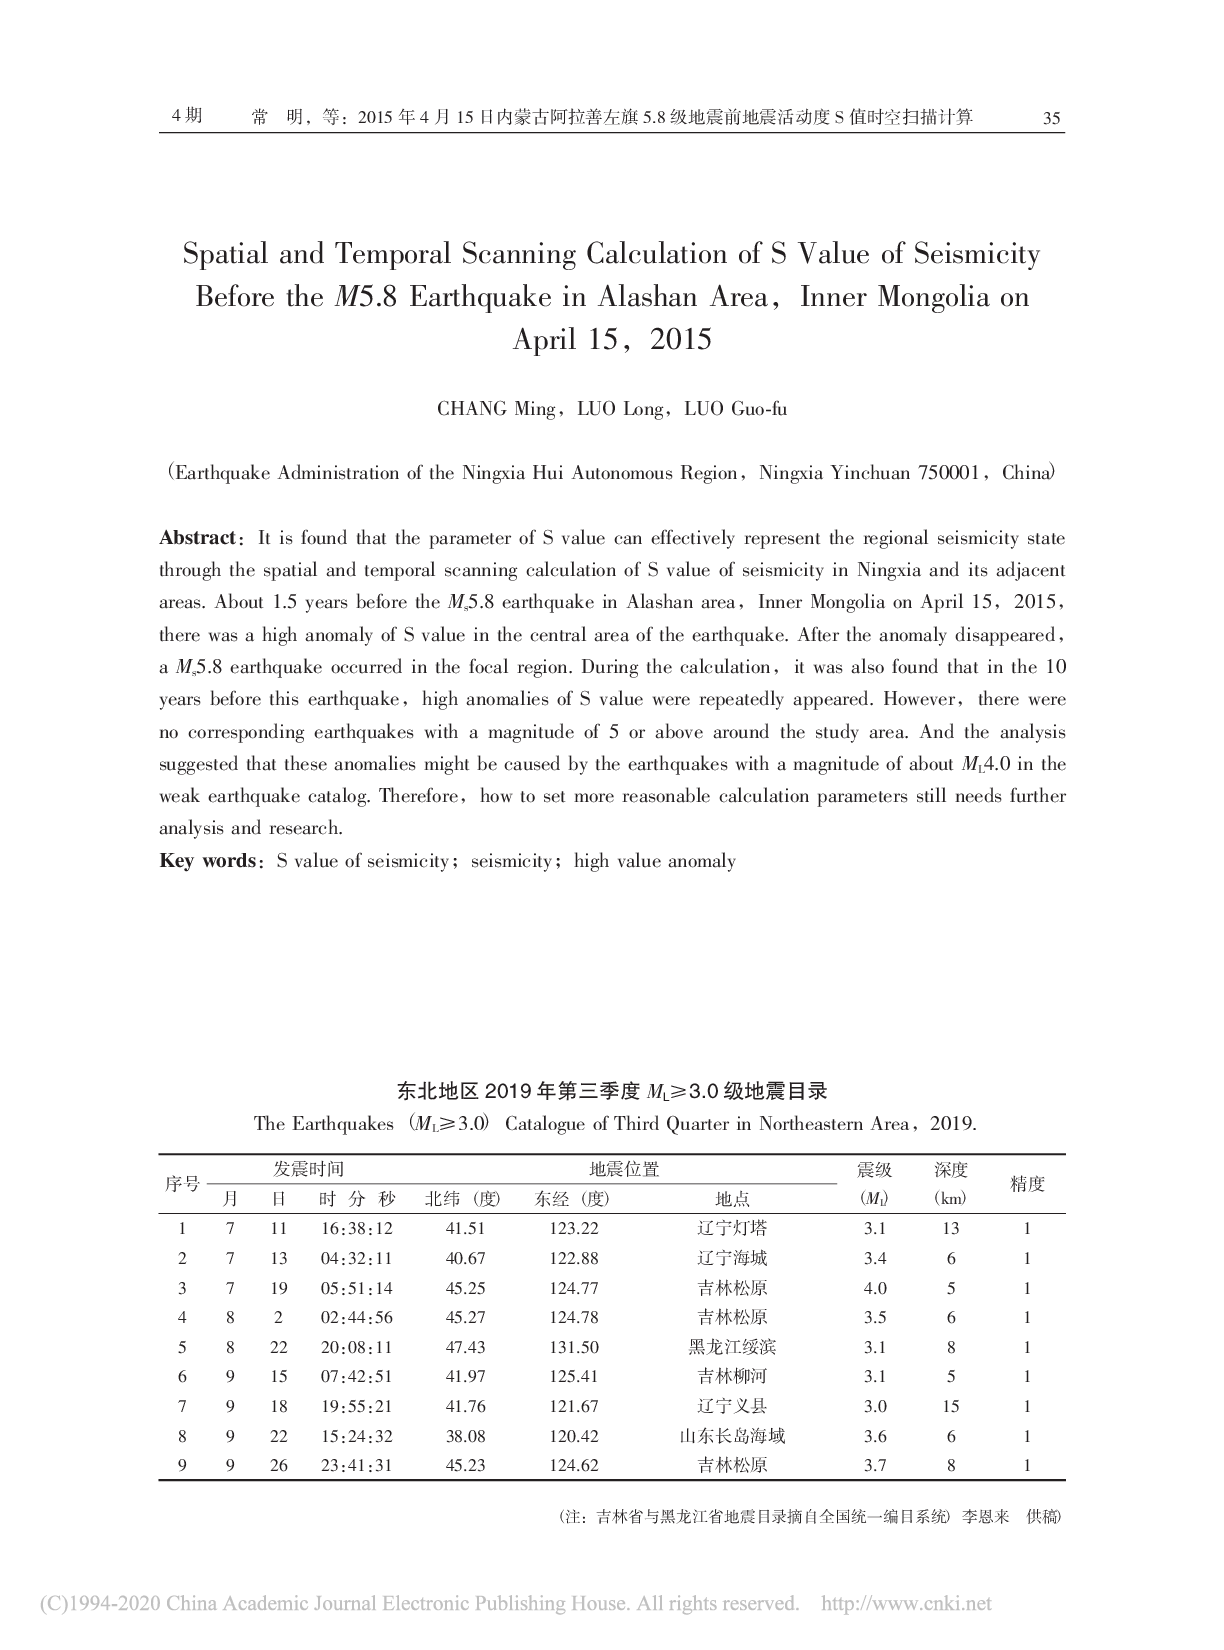 东北地区2019年第三季度ML≥3.0级地震目录